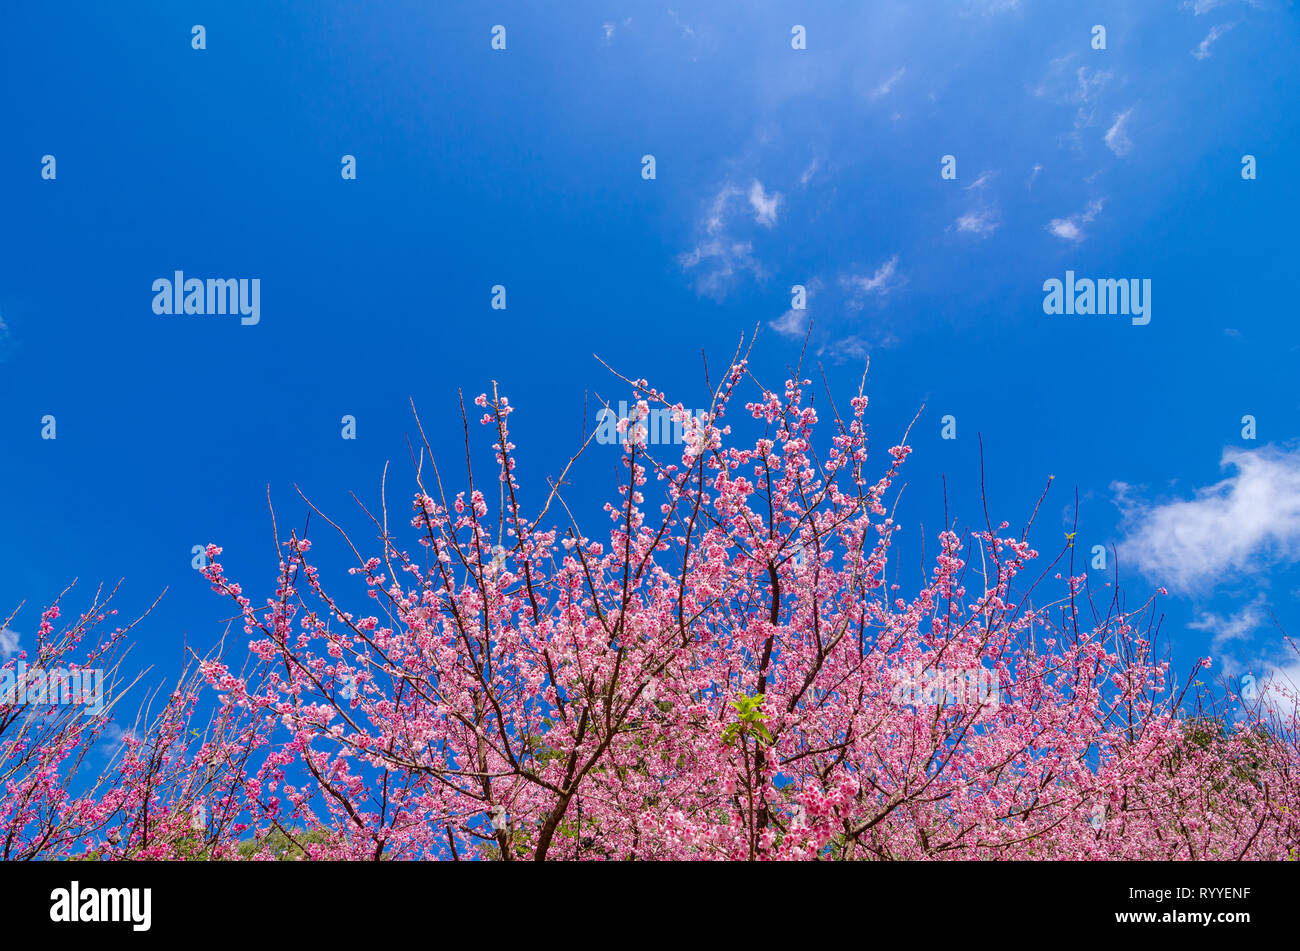 Sakura fond bleu Angkhang Chiang Mai Thaïlande Banque D'Images